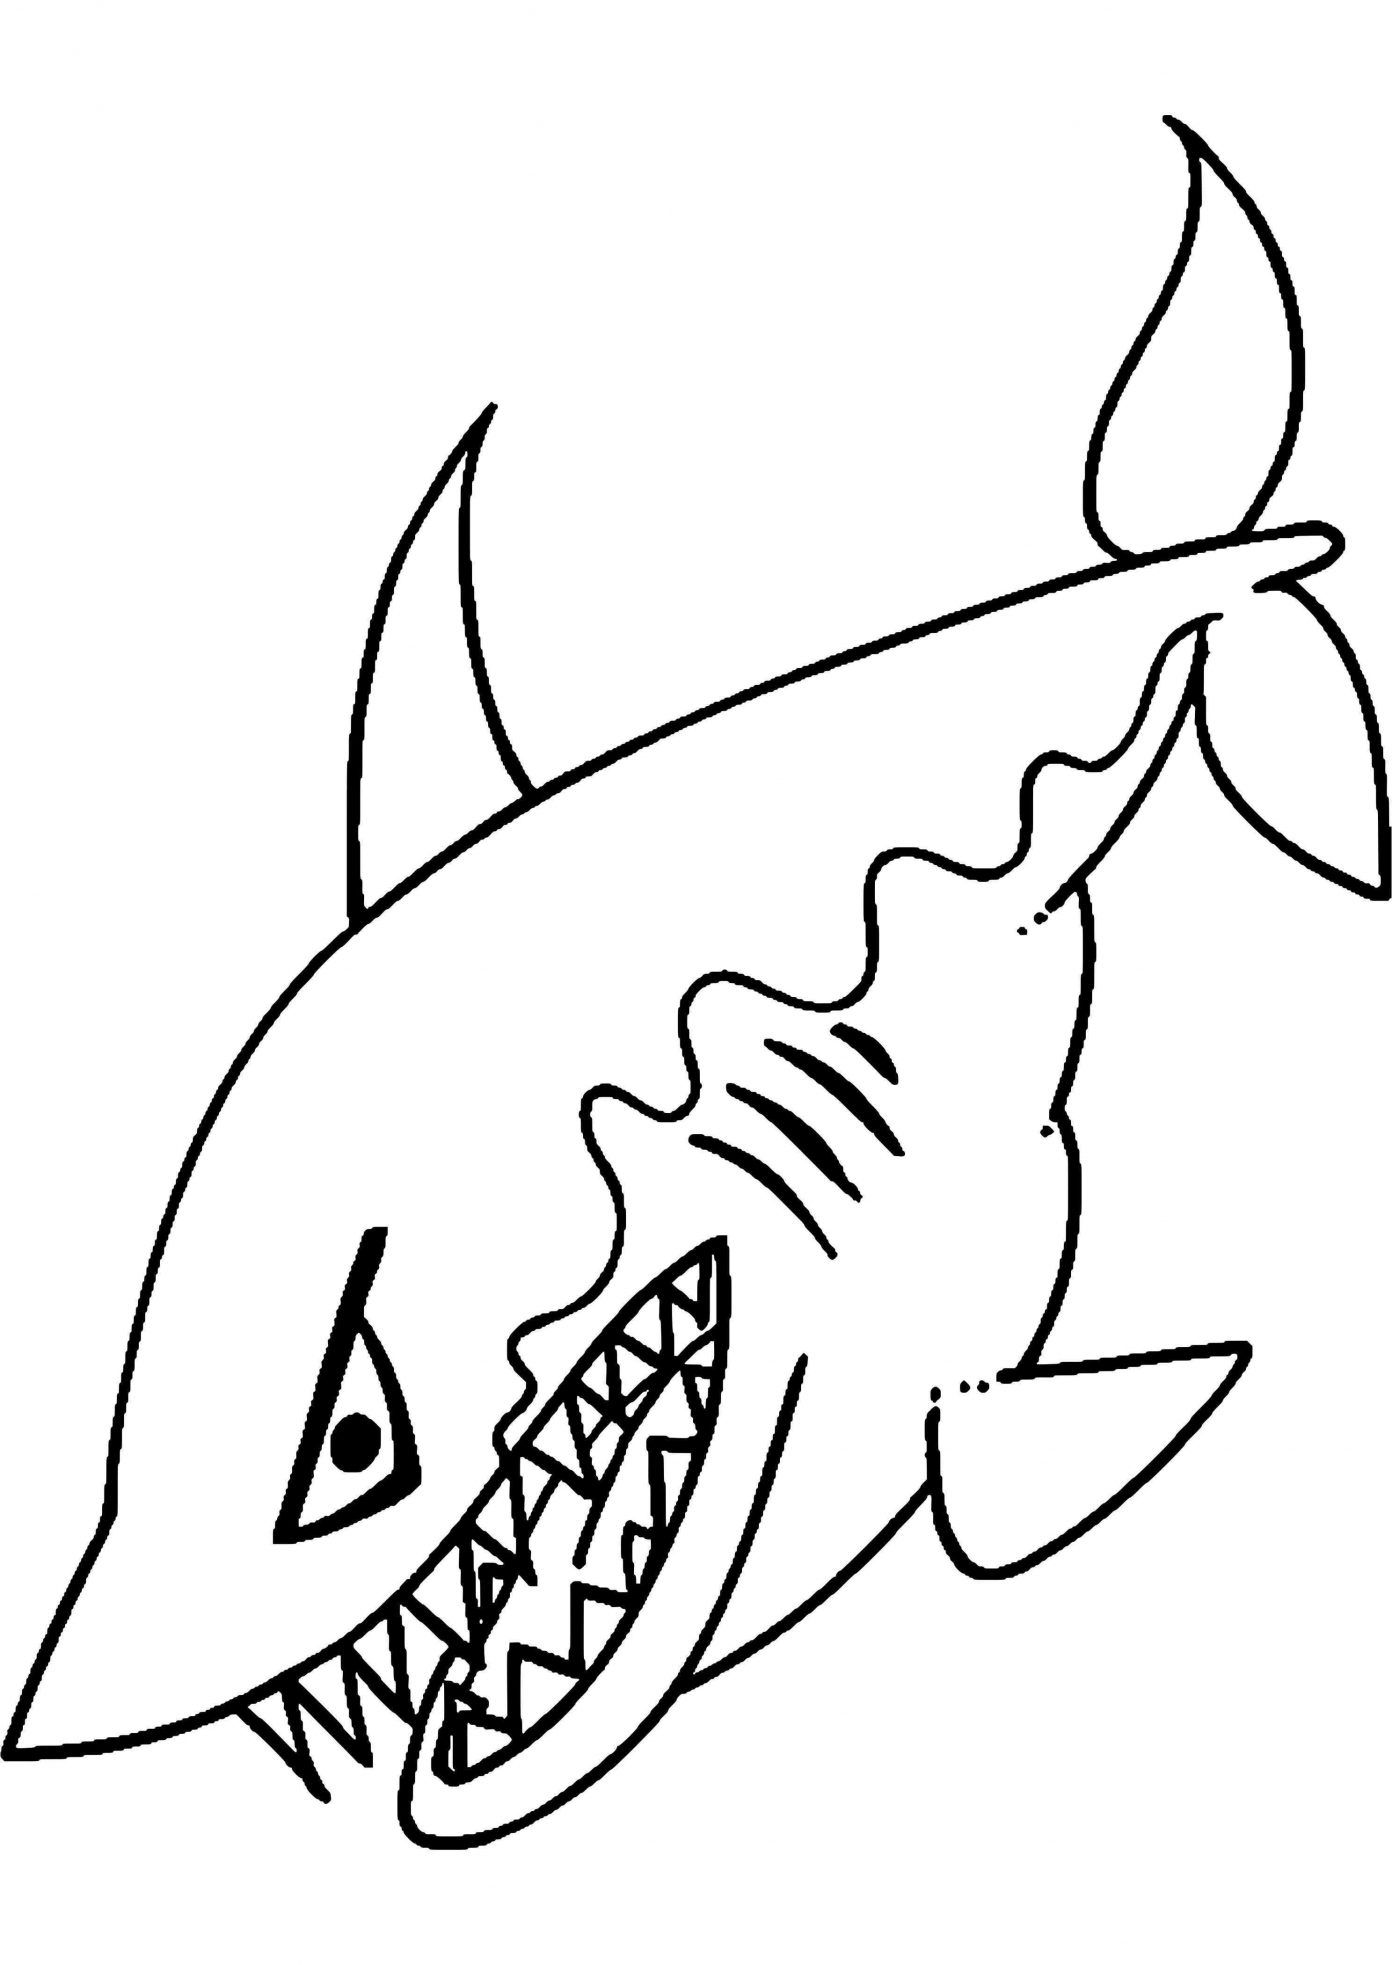 Tranh tô màu sắc loài cá mập với hàm răng sắc nhọn